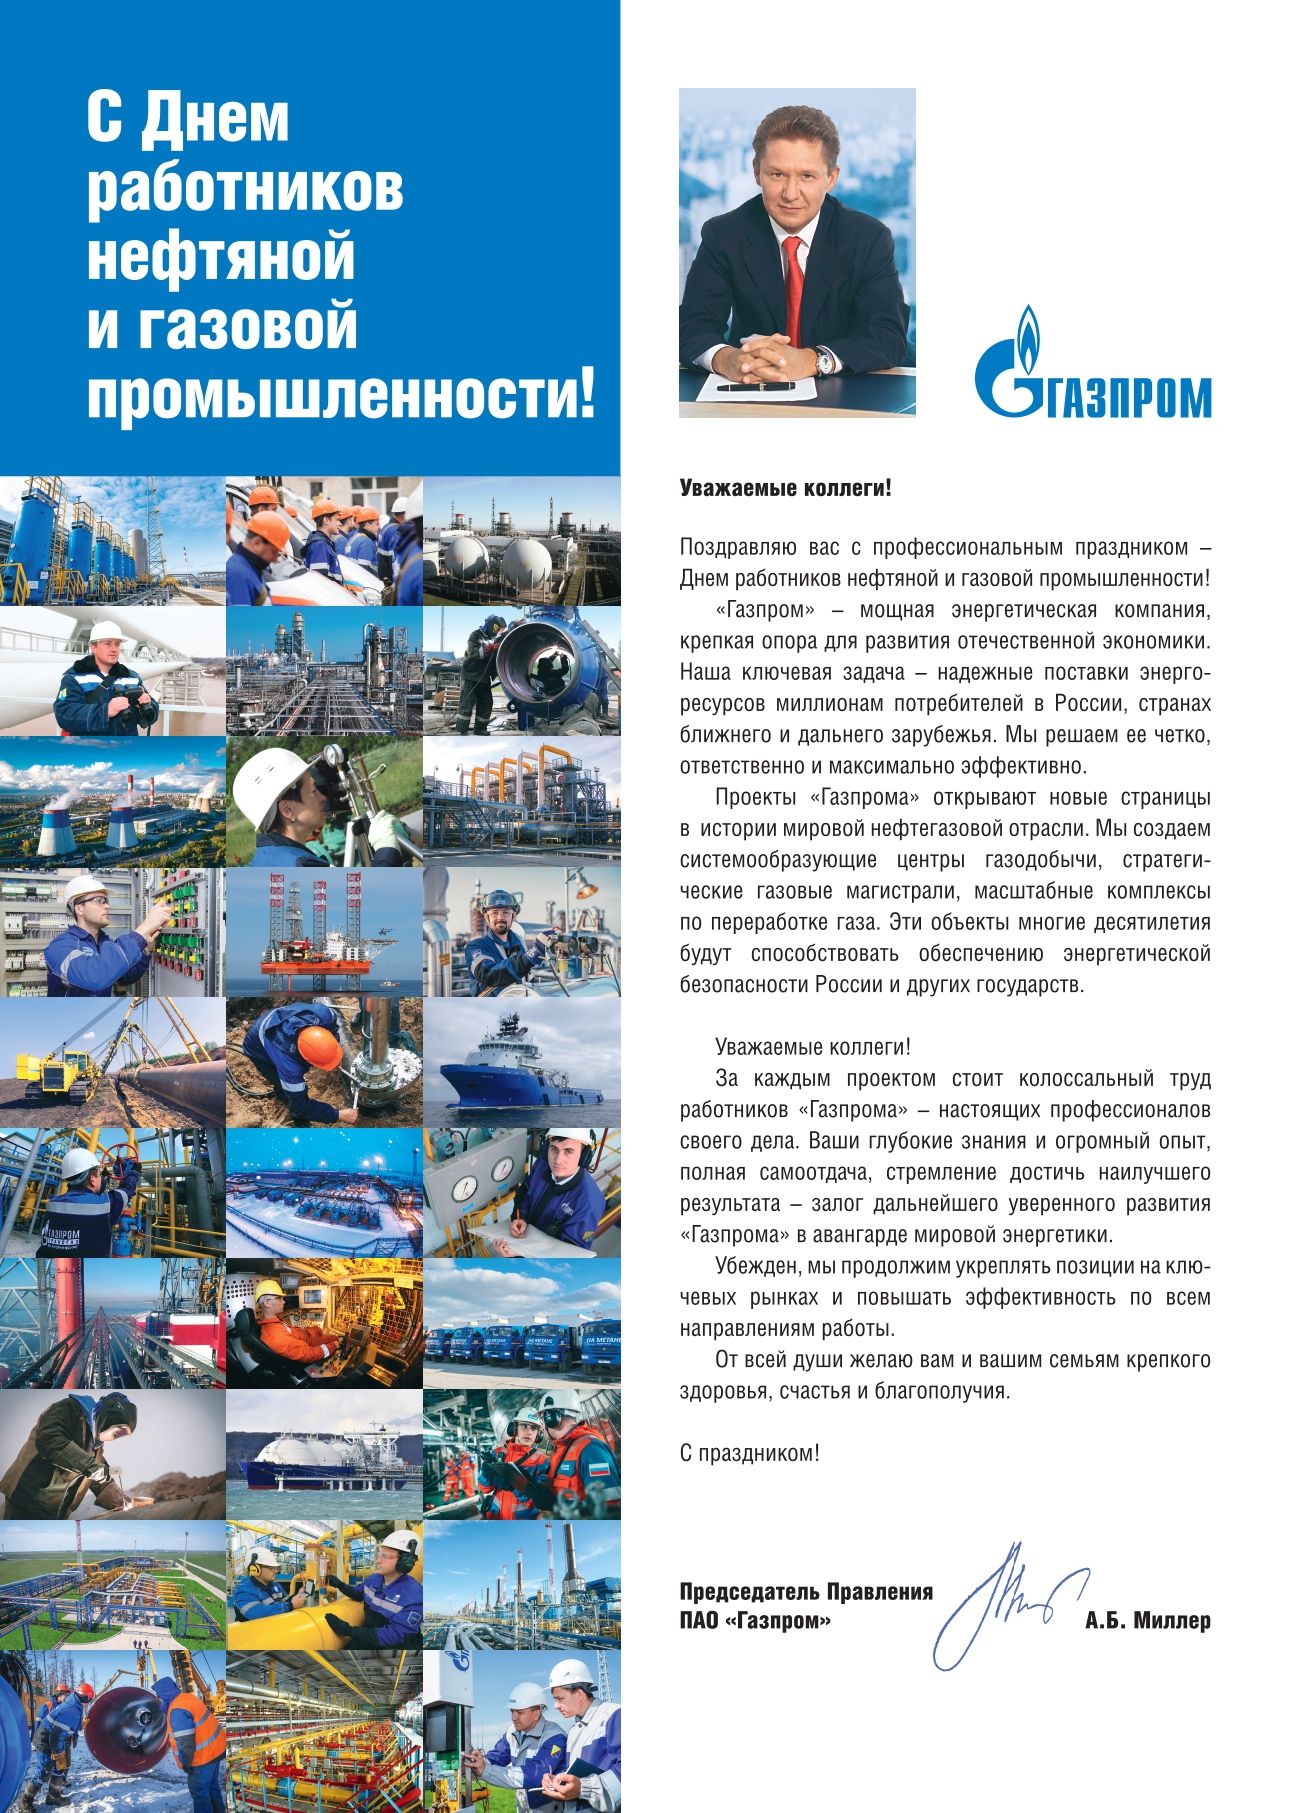 Поздравление Председателя Правления ПАО "Газпром" А.Б. Миллера по случаю празднования Дня работников нефтяной и газовой промышленности